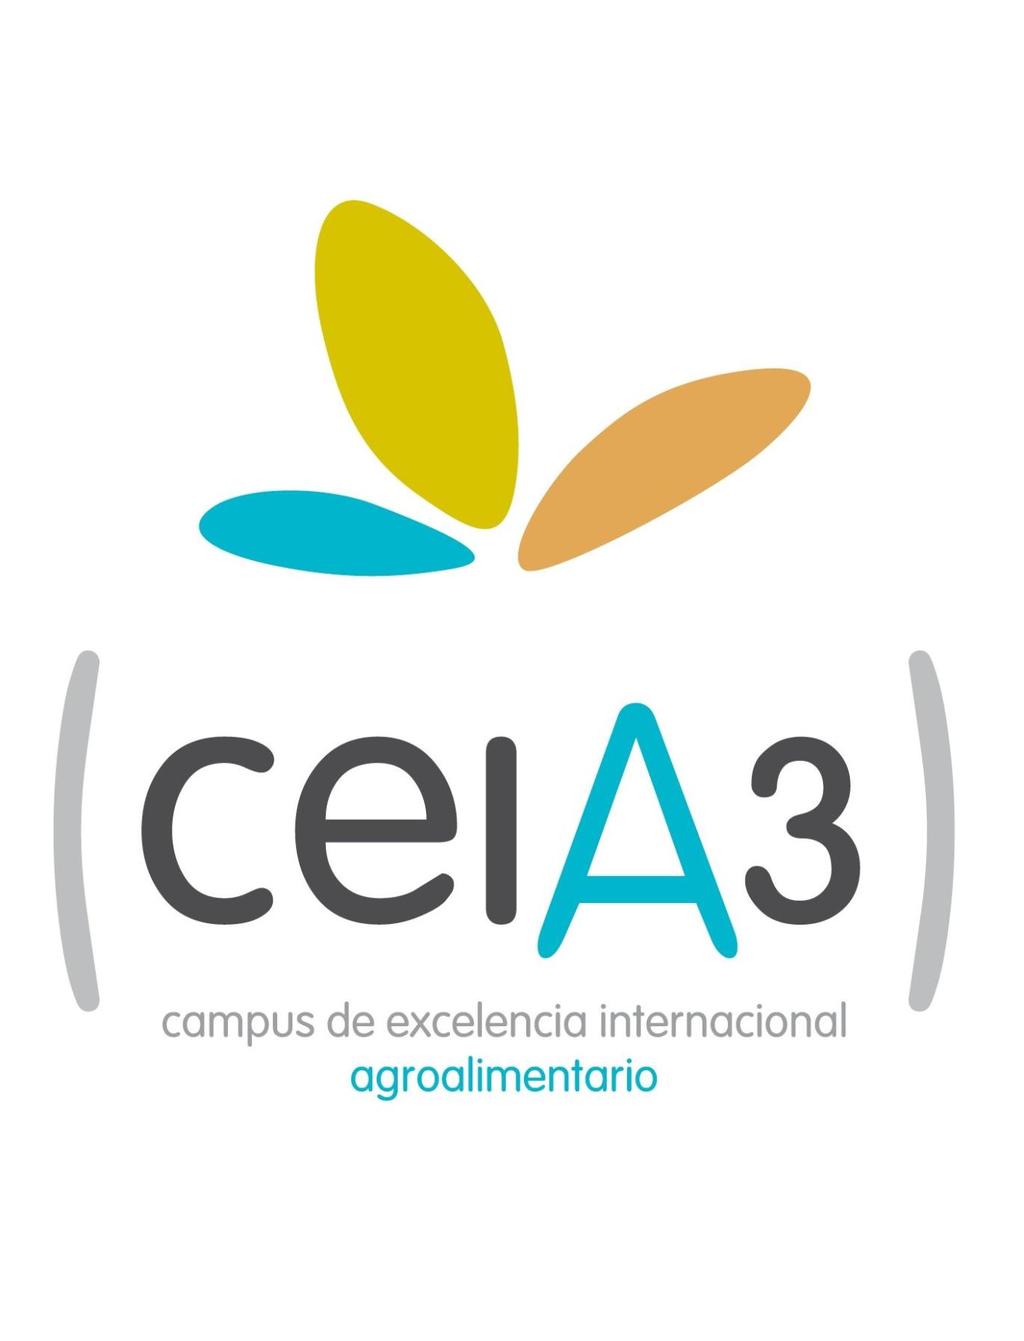 Compromiso social Campus de Excelencia Internacional ceia3 Almería, Cádiz, Huelva, Jaén.